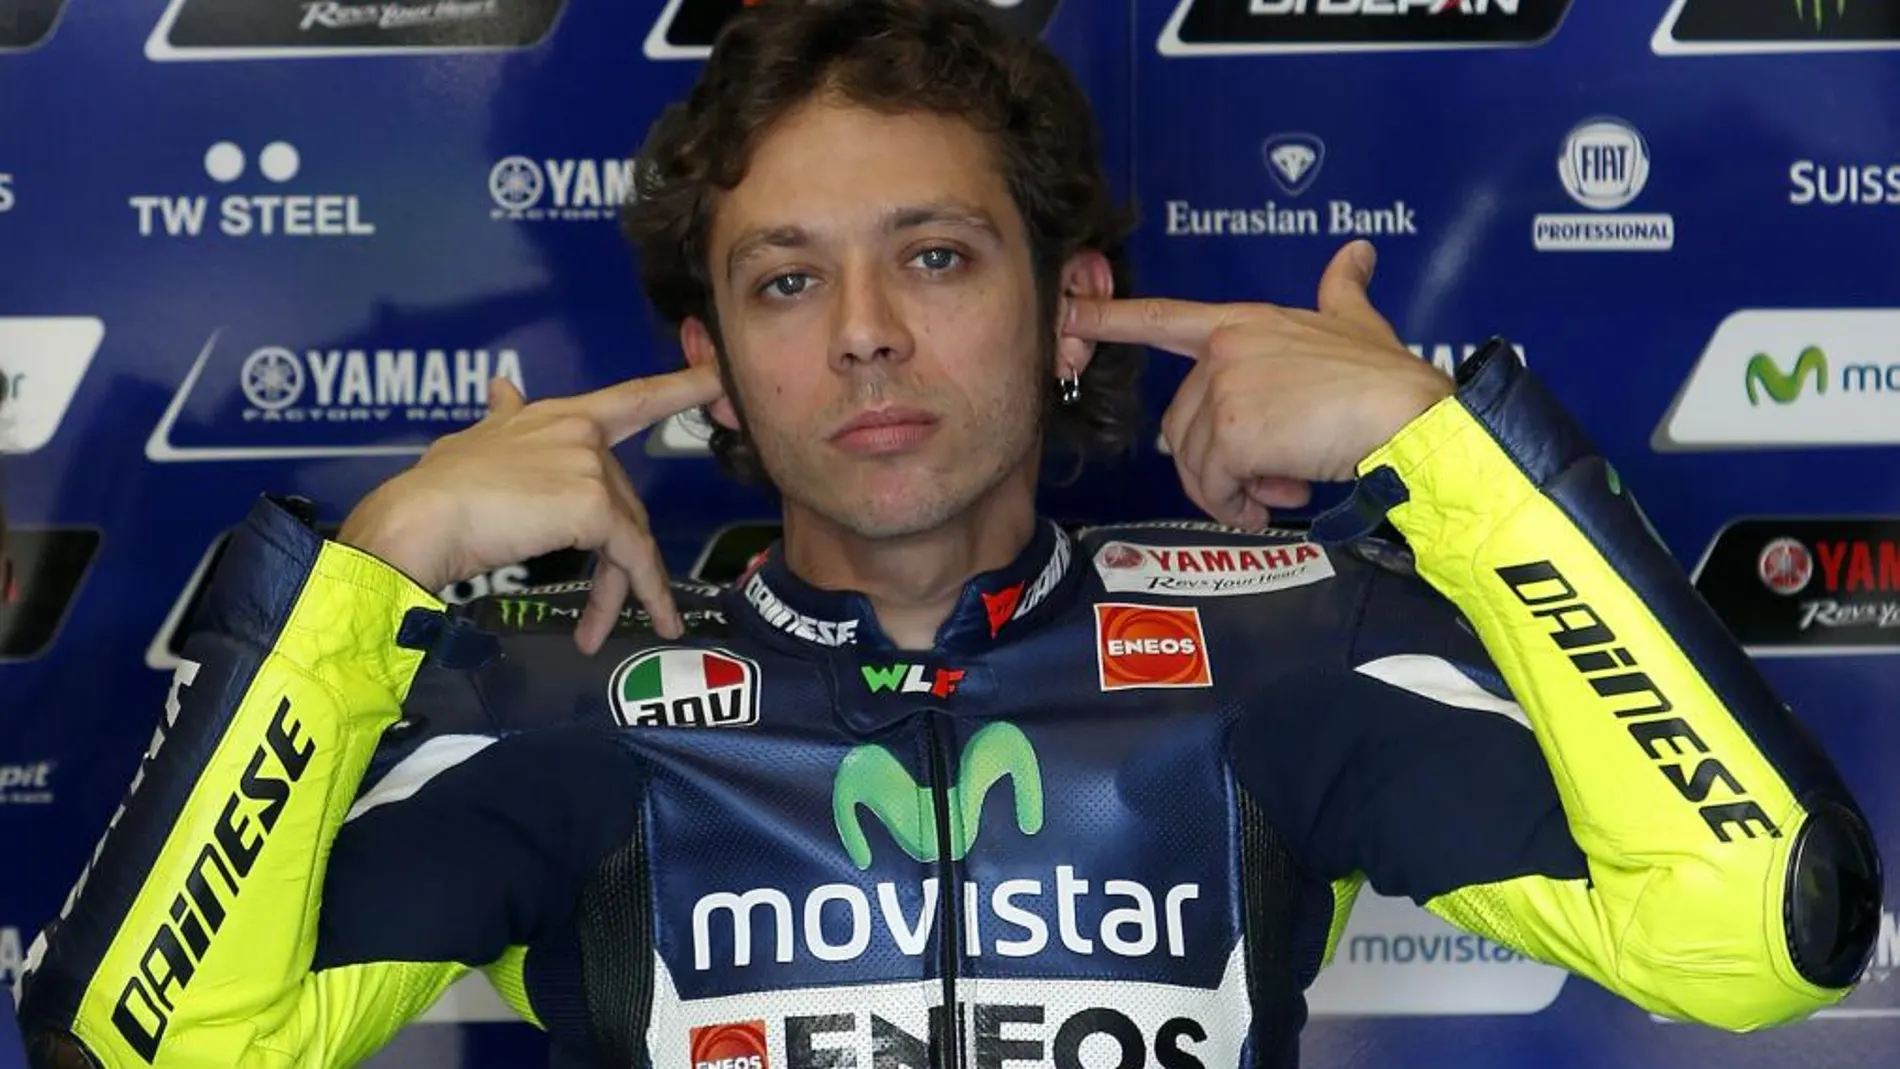 El piloto italiano de MotoGP Valentino Rossi (Yamaha) en boxes durante los primeros entrenamientos libres del Gran Premio de España de Motociclismo.